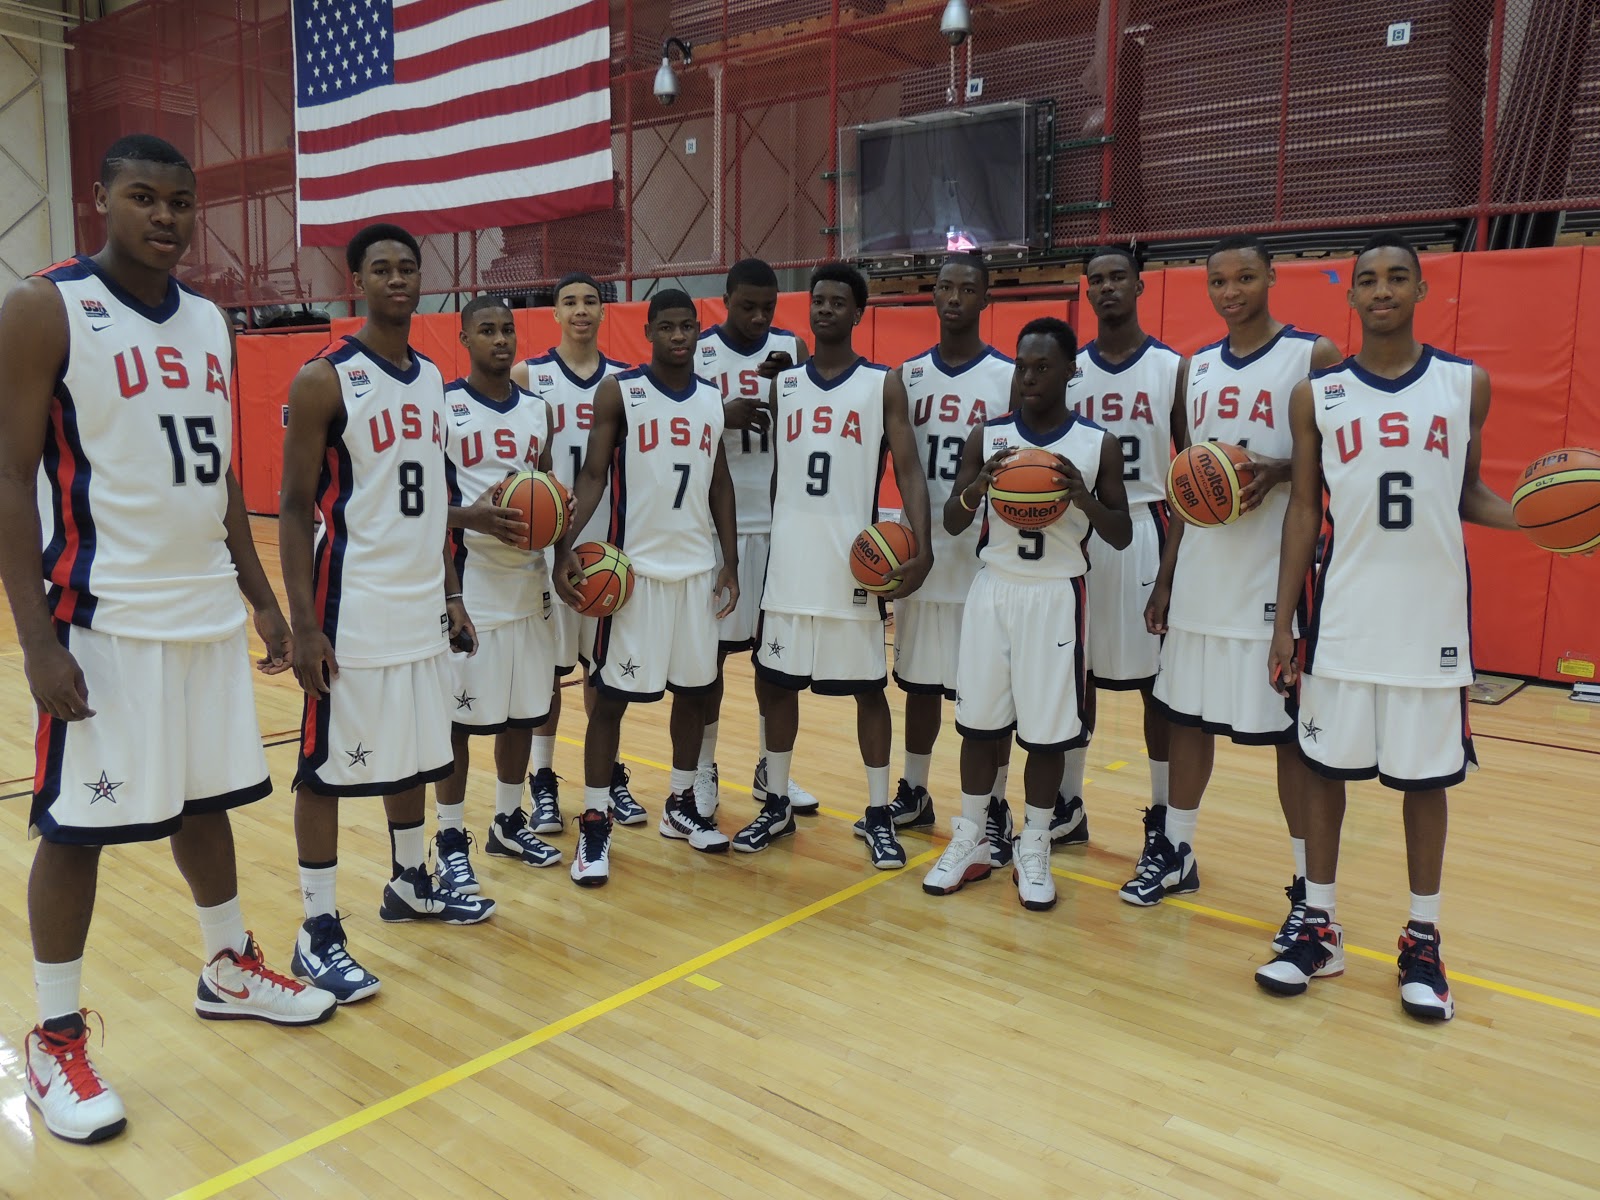 USA Basketball U16 2013 The USA Uniforms!